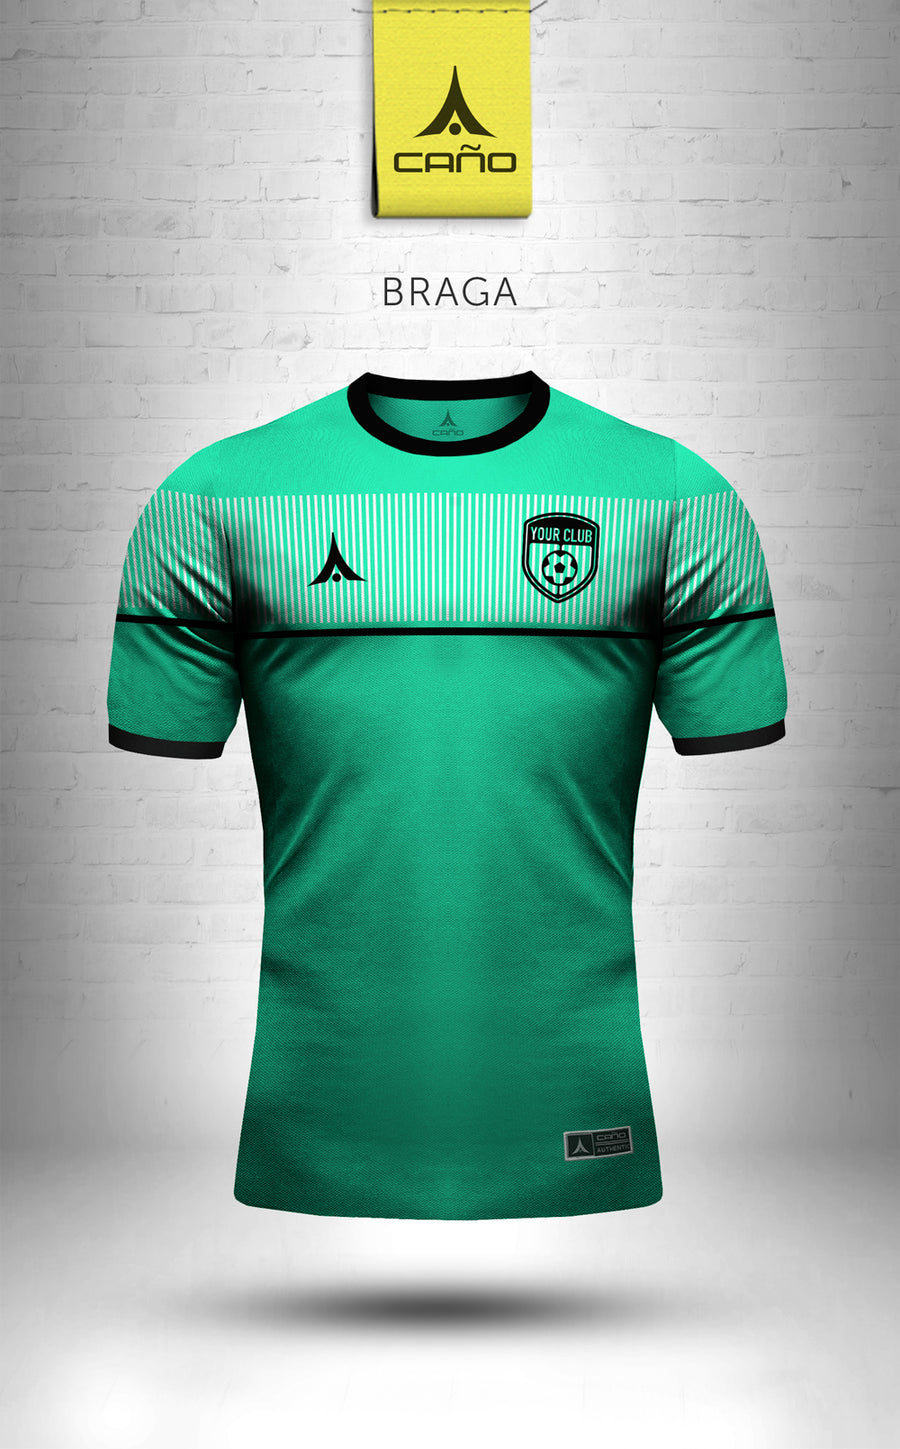 Braga in green/black